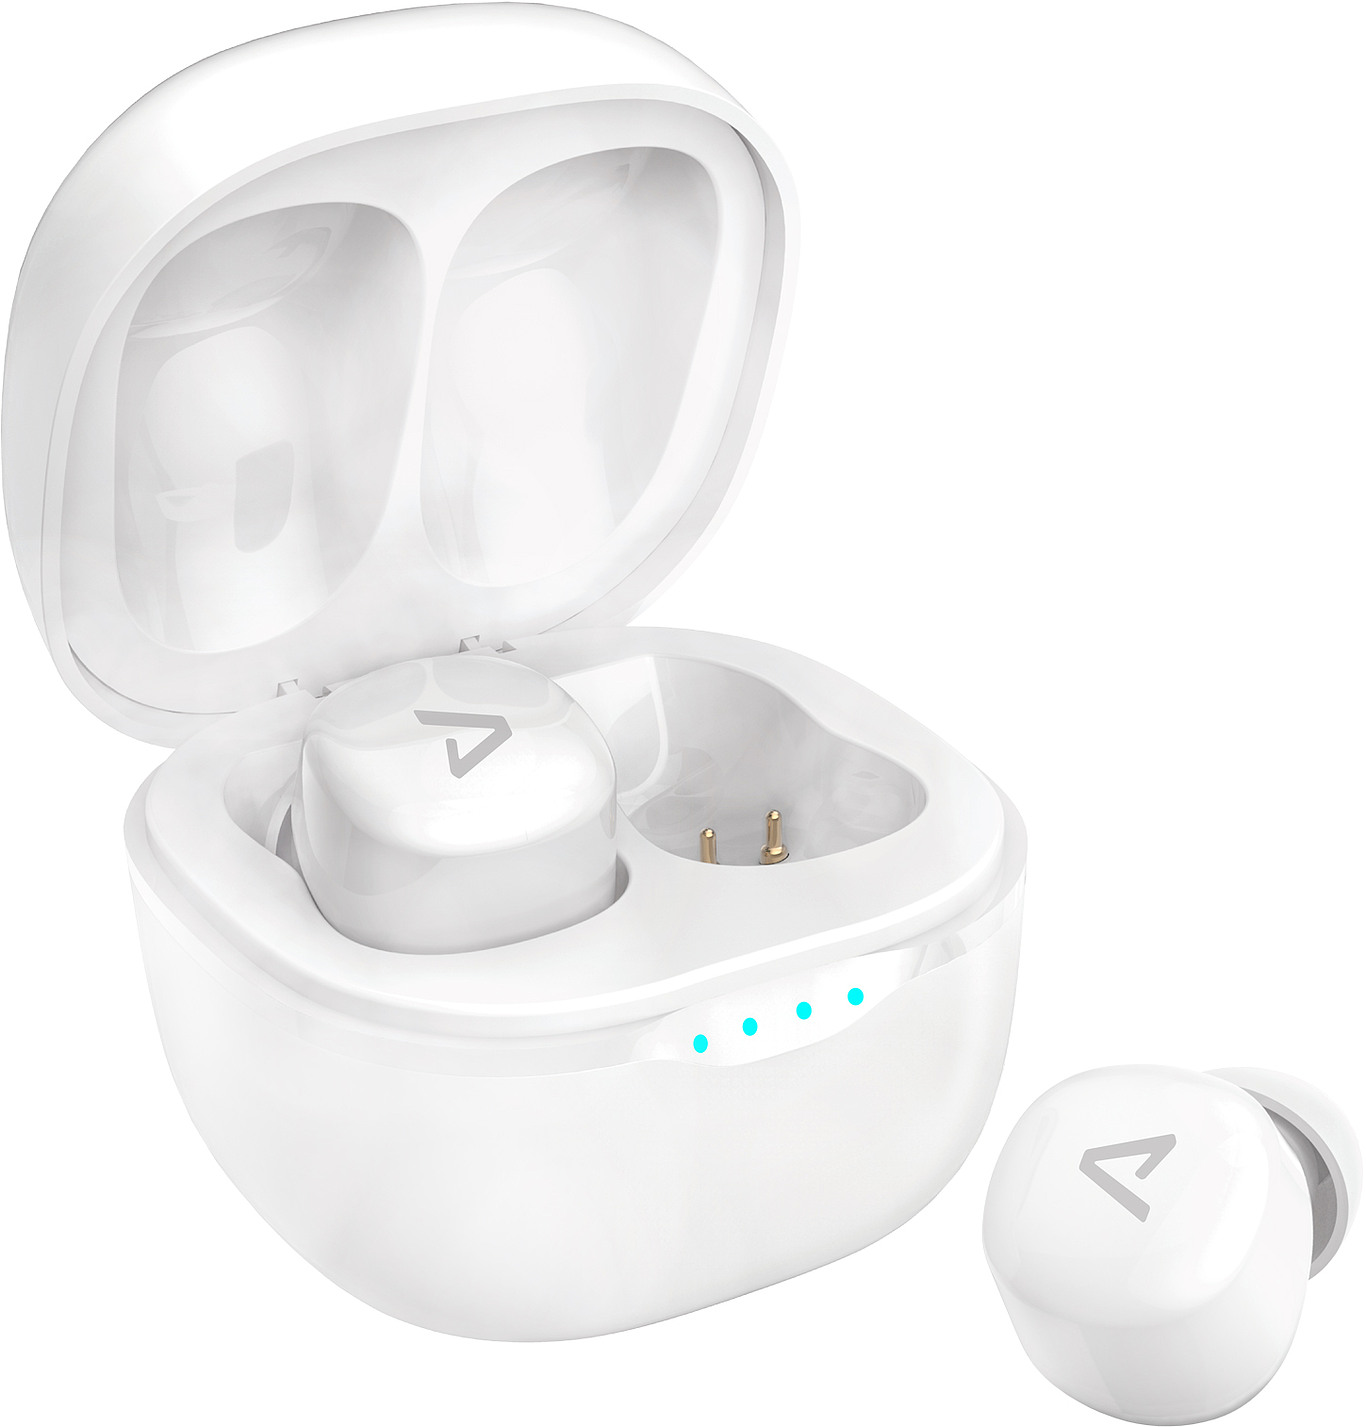 LAMAX Dots2 Touch White - Nejmenší sluchátka na trhu, které padnou každému